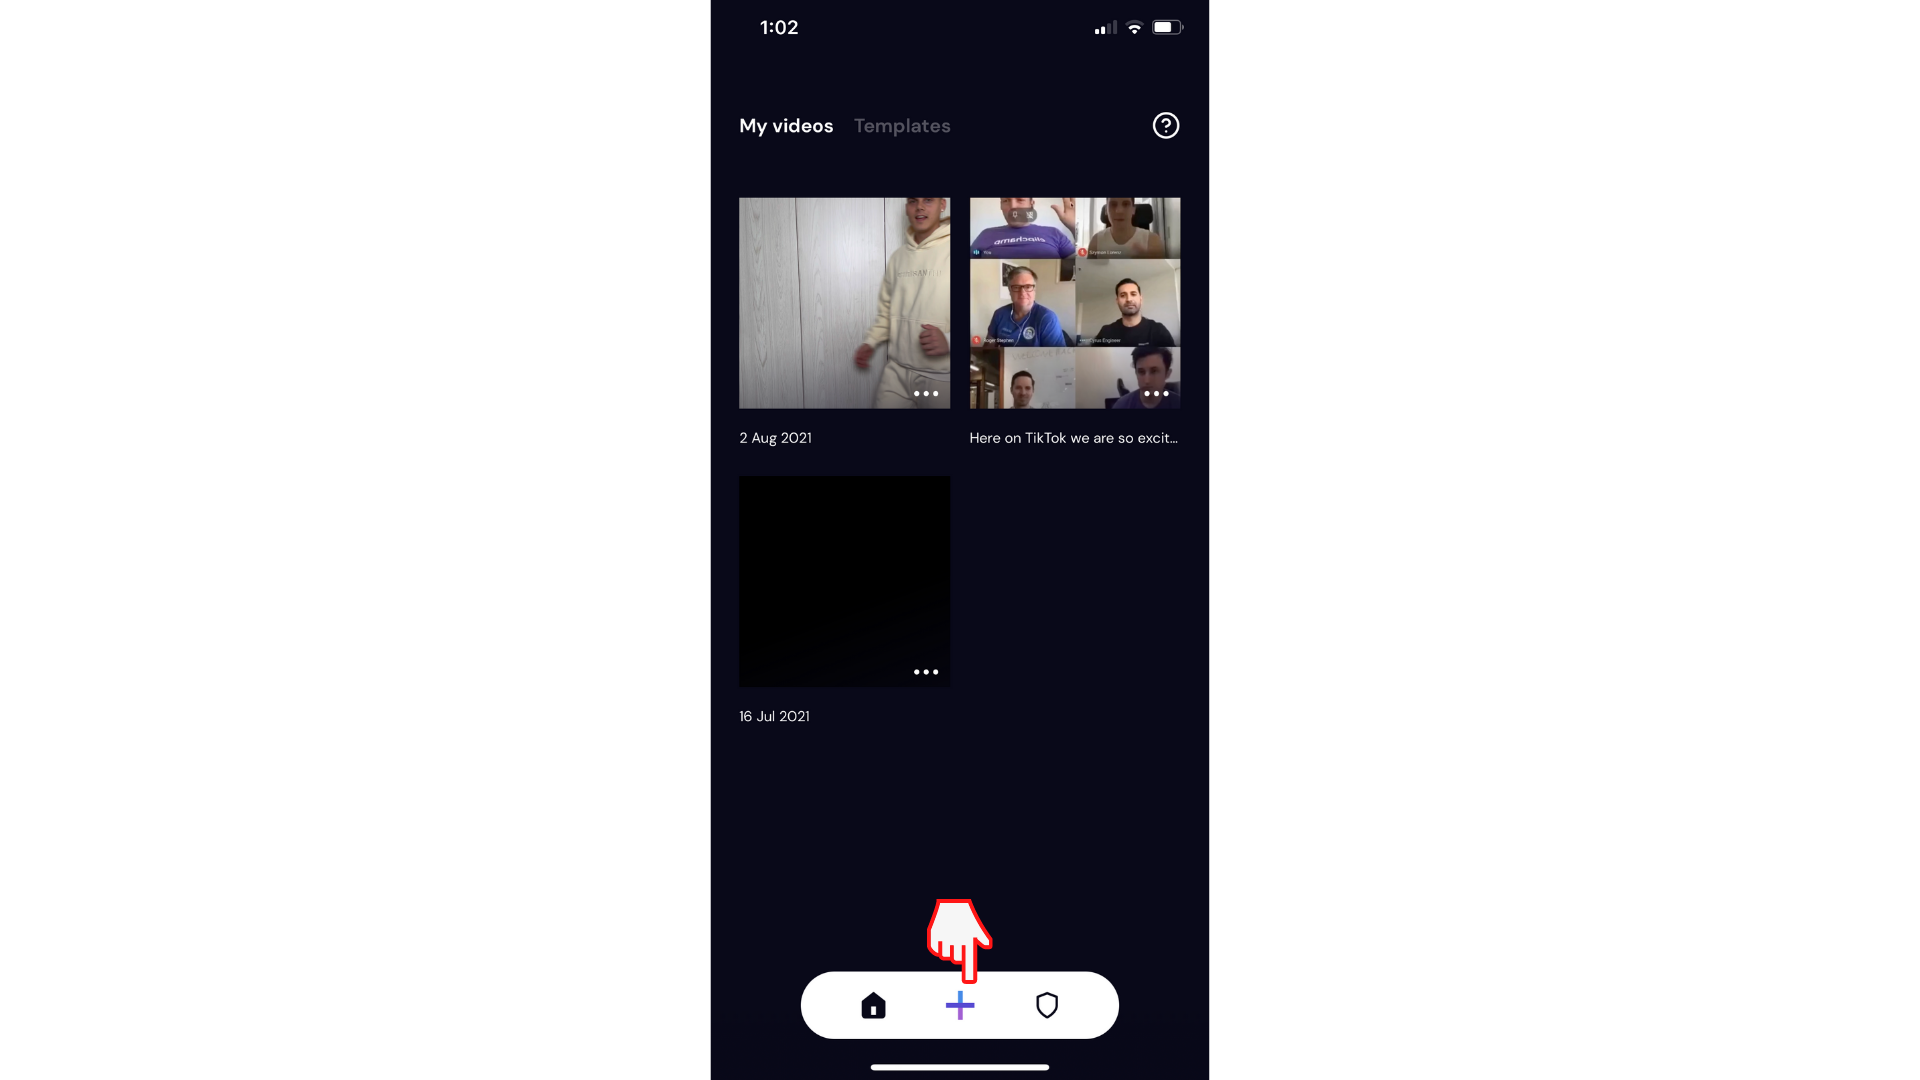 Usuário criando um novo vídeo no aplicativo clipchamp iOS clicando no botão de adição